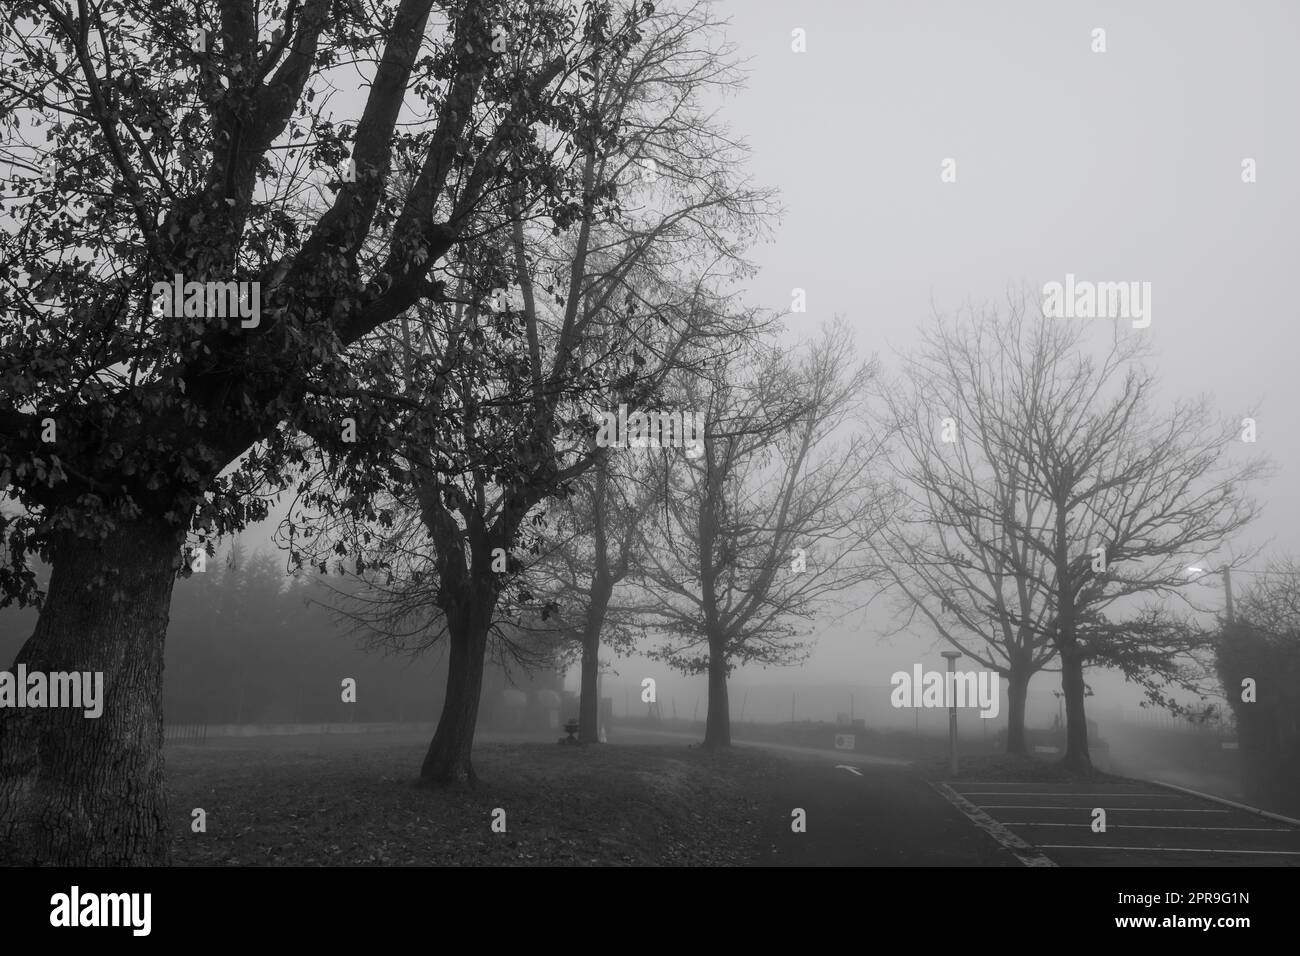 Schwarz-weiße Szene mit blattlosen Bäumen für Halloween-Tag Hintergrund. Bäume neben der Straße im Nebel. Halloween-Nacht-Hintergrund. Tod, traurig, hoffnungslos und Verzweiflung Konzept. Tote Äste. Stockfoto